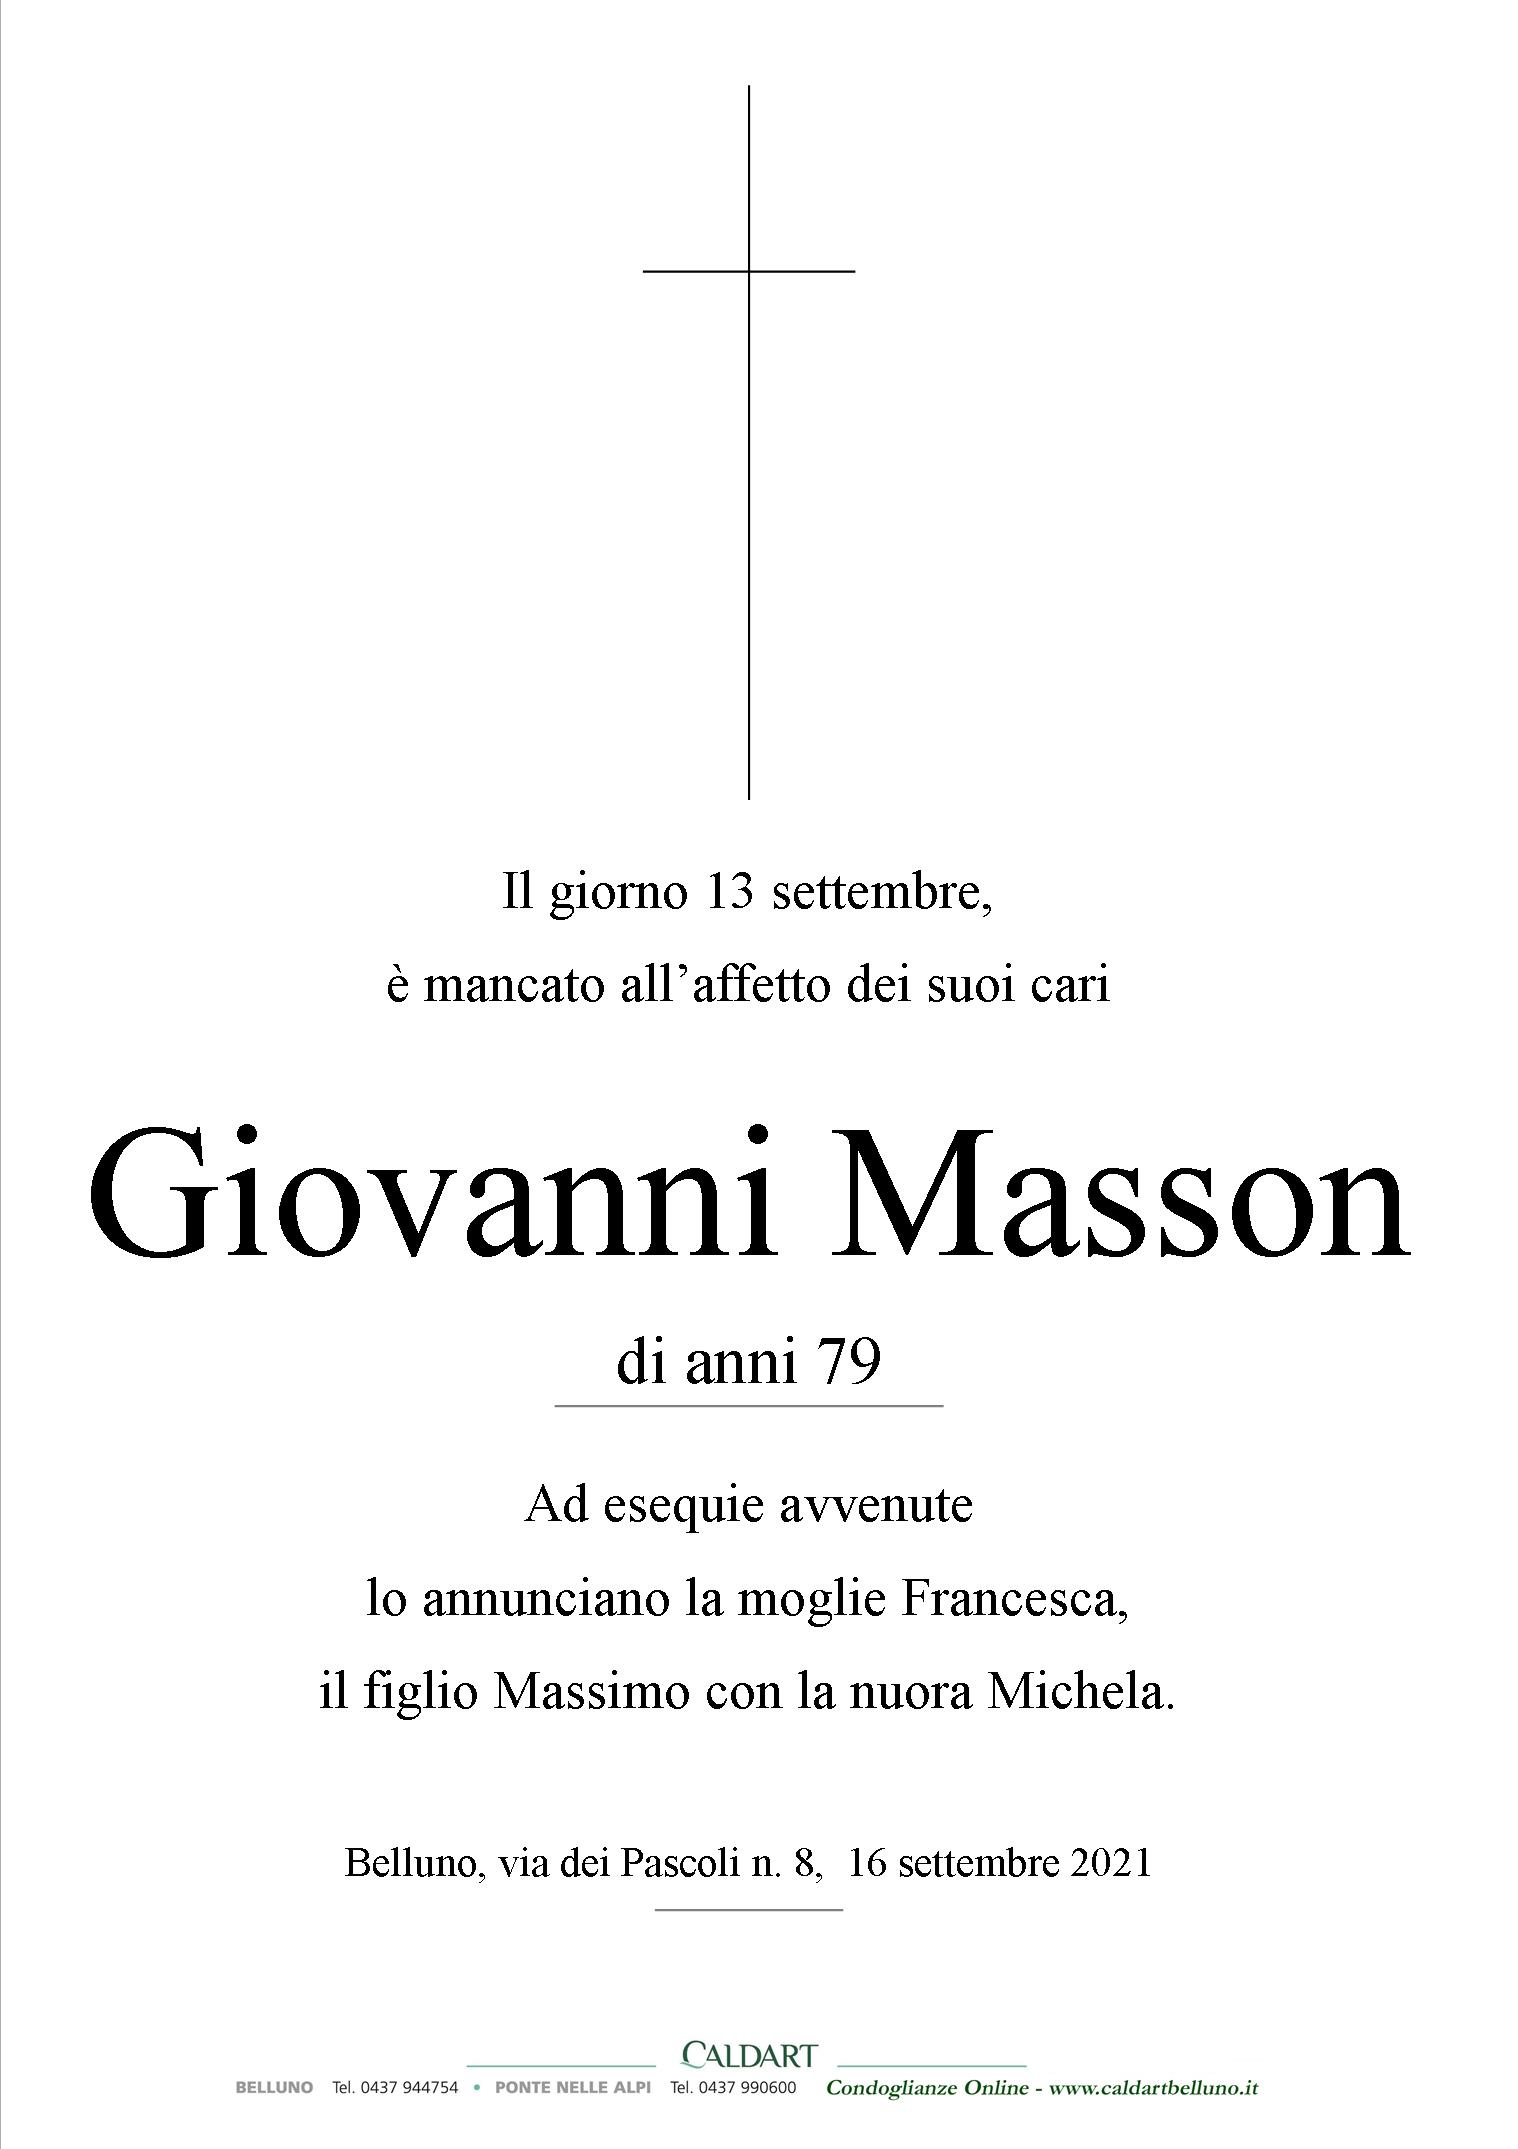 Masson Giovanni